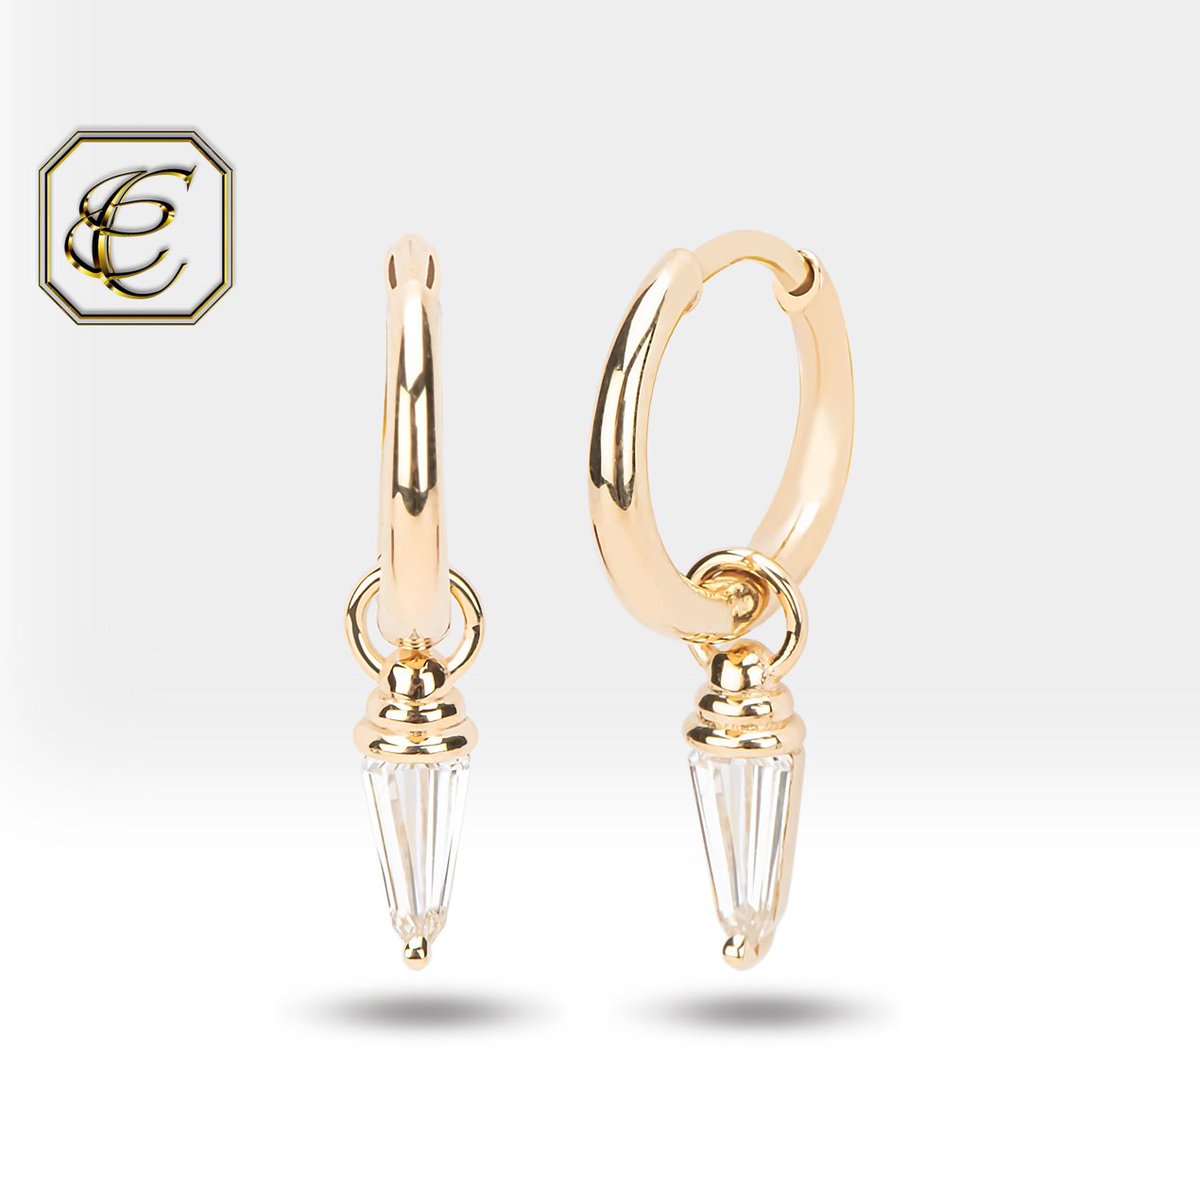 Fine Jewelry Clip On Huggie Earring By Chelebi Birthday Gift for Her Blue Dangle Earrings in 14K Rose Gold Blue Diamond Spike Earrings Jewellery Earrings Hoop Earrings 